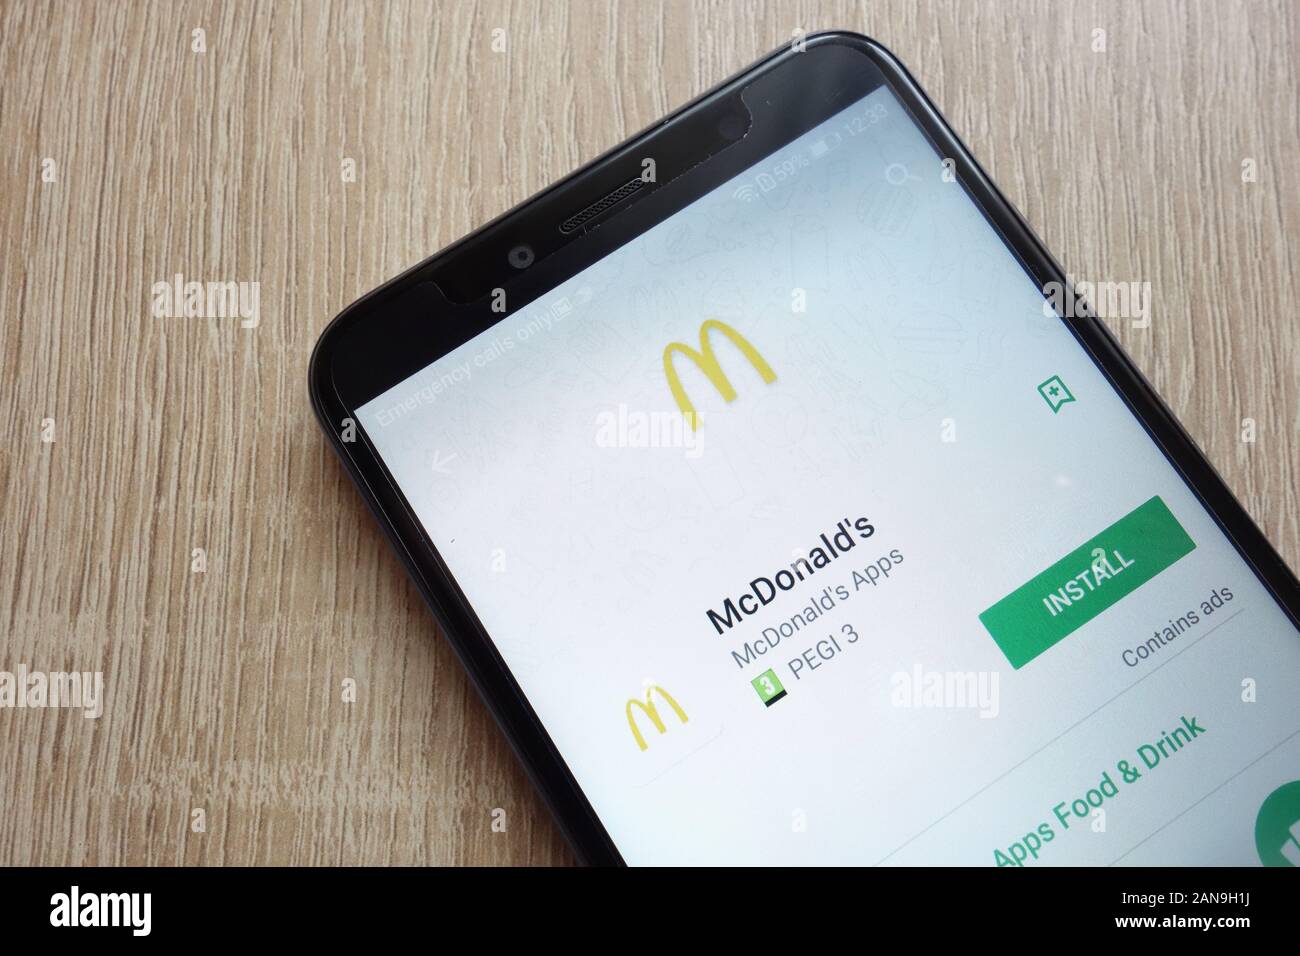 Application McDonald's sur le site Web de Google Play Store affichée sur le smartphone Huawei an 6 2018 Banque D'Images